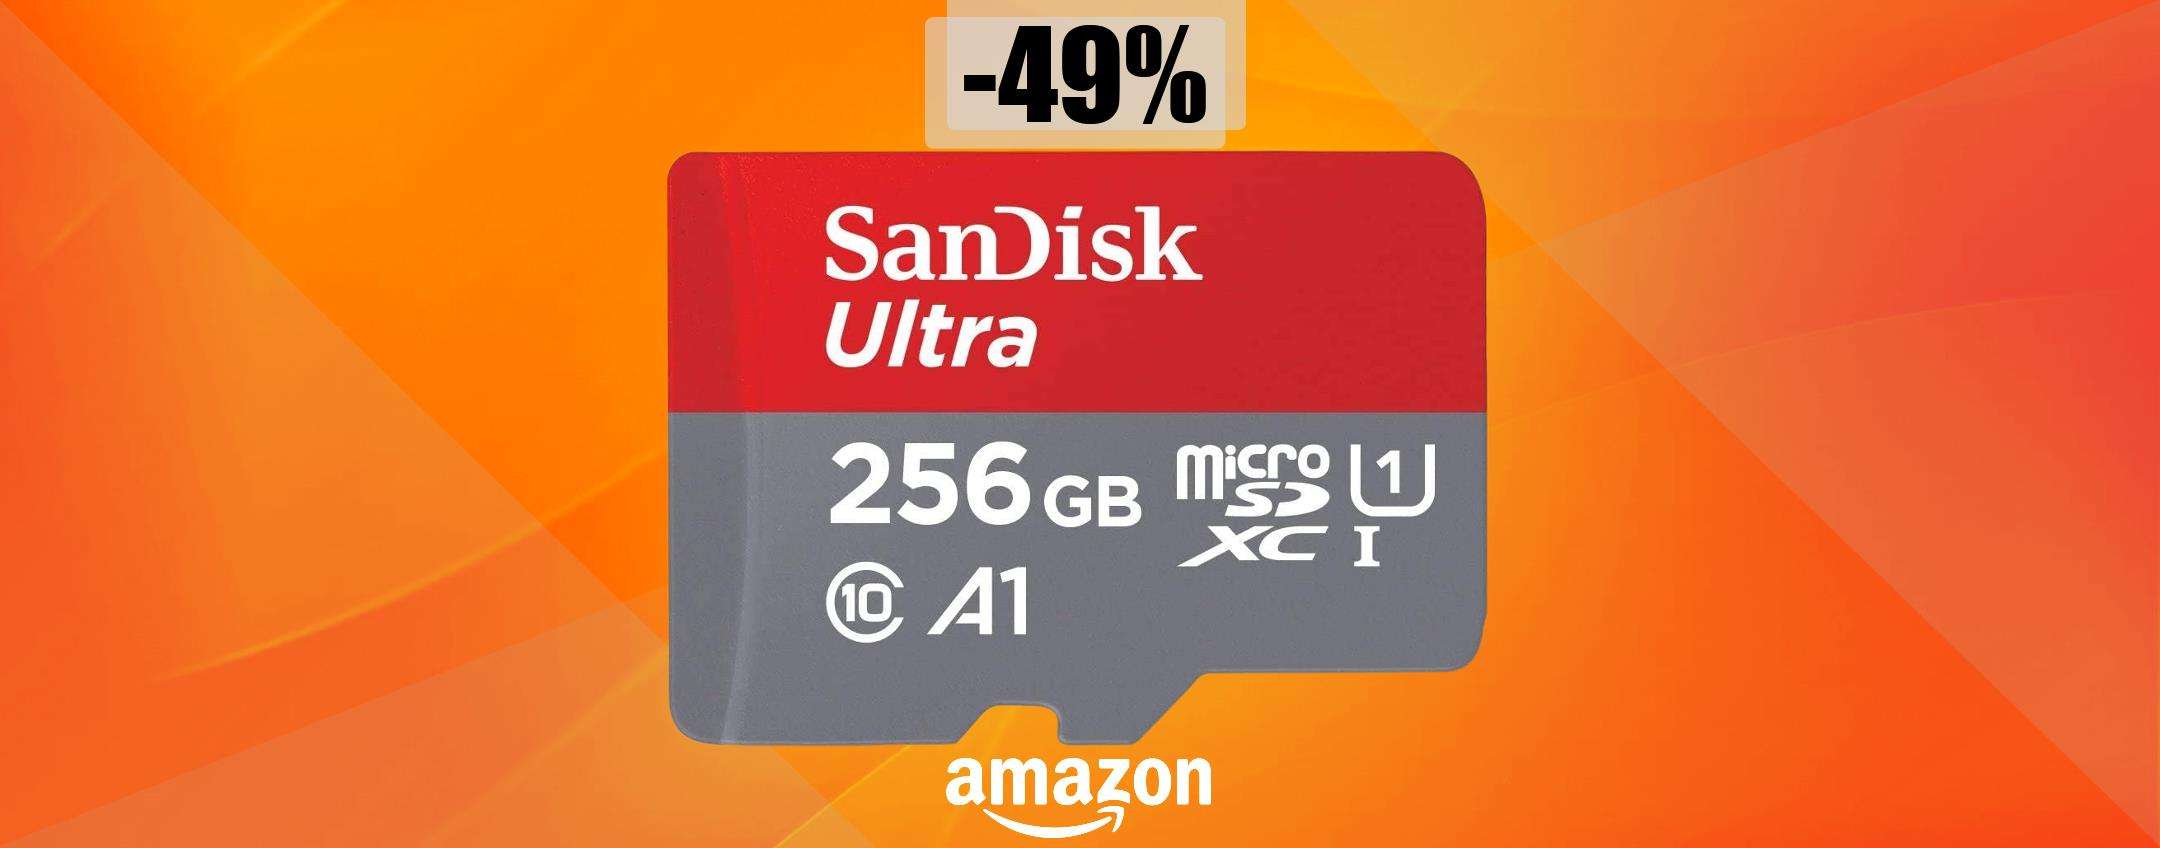 MicroSD SanDisk 256GB a quasi METÀ PREZZO: tua con soli 31€